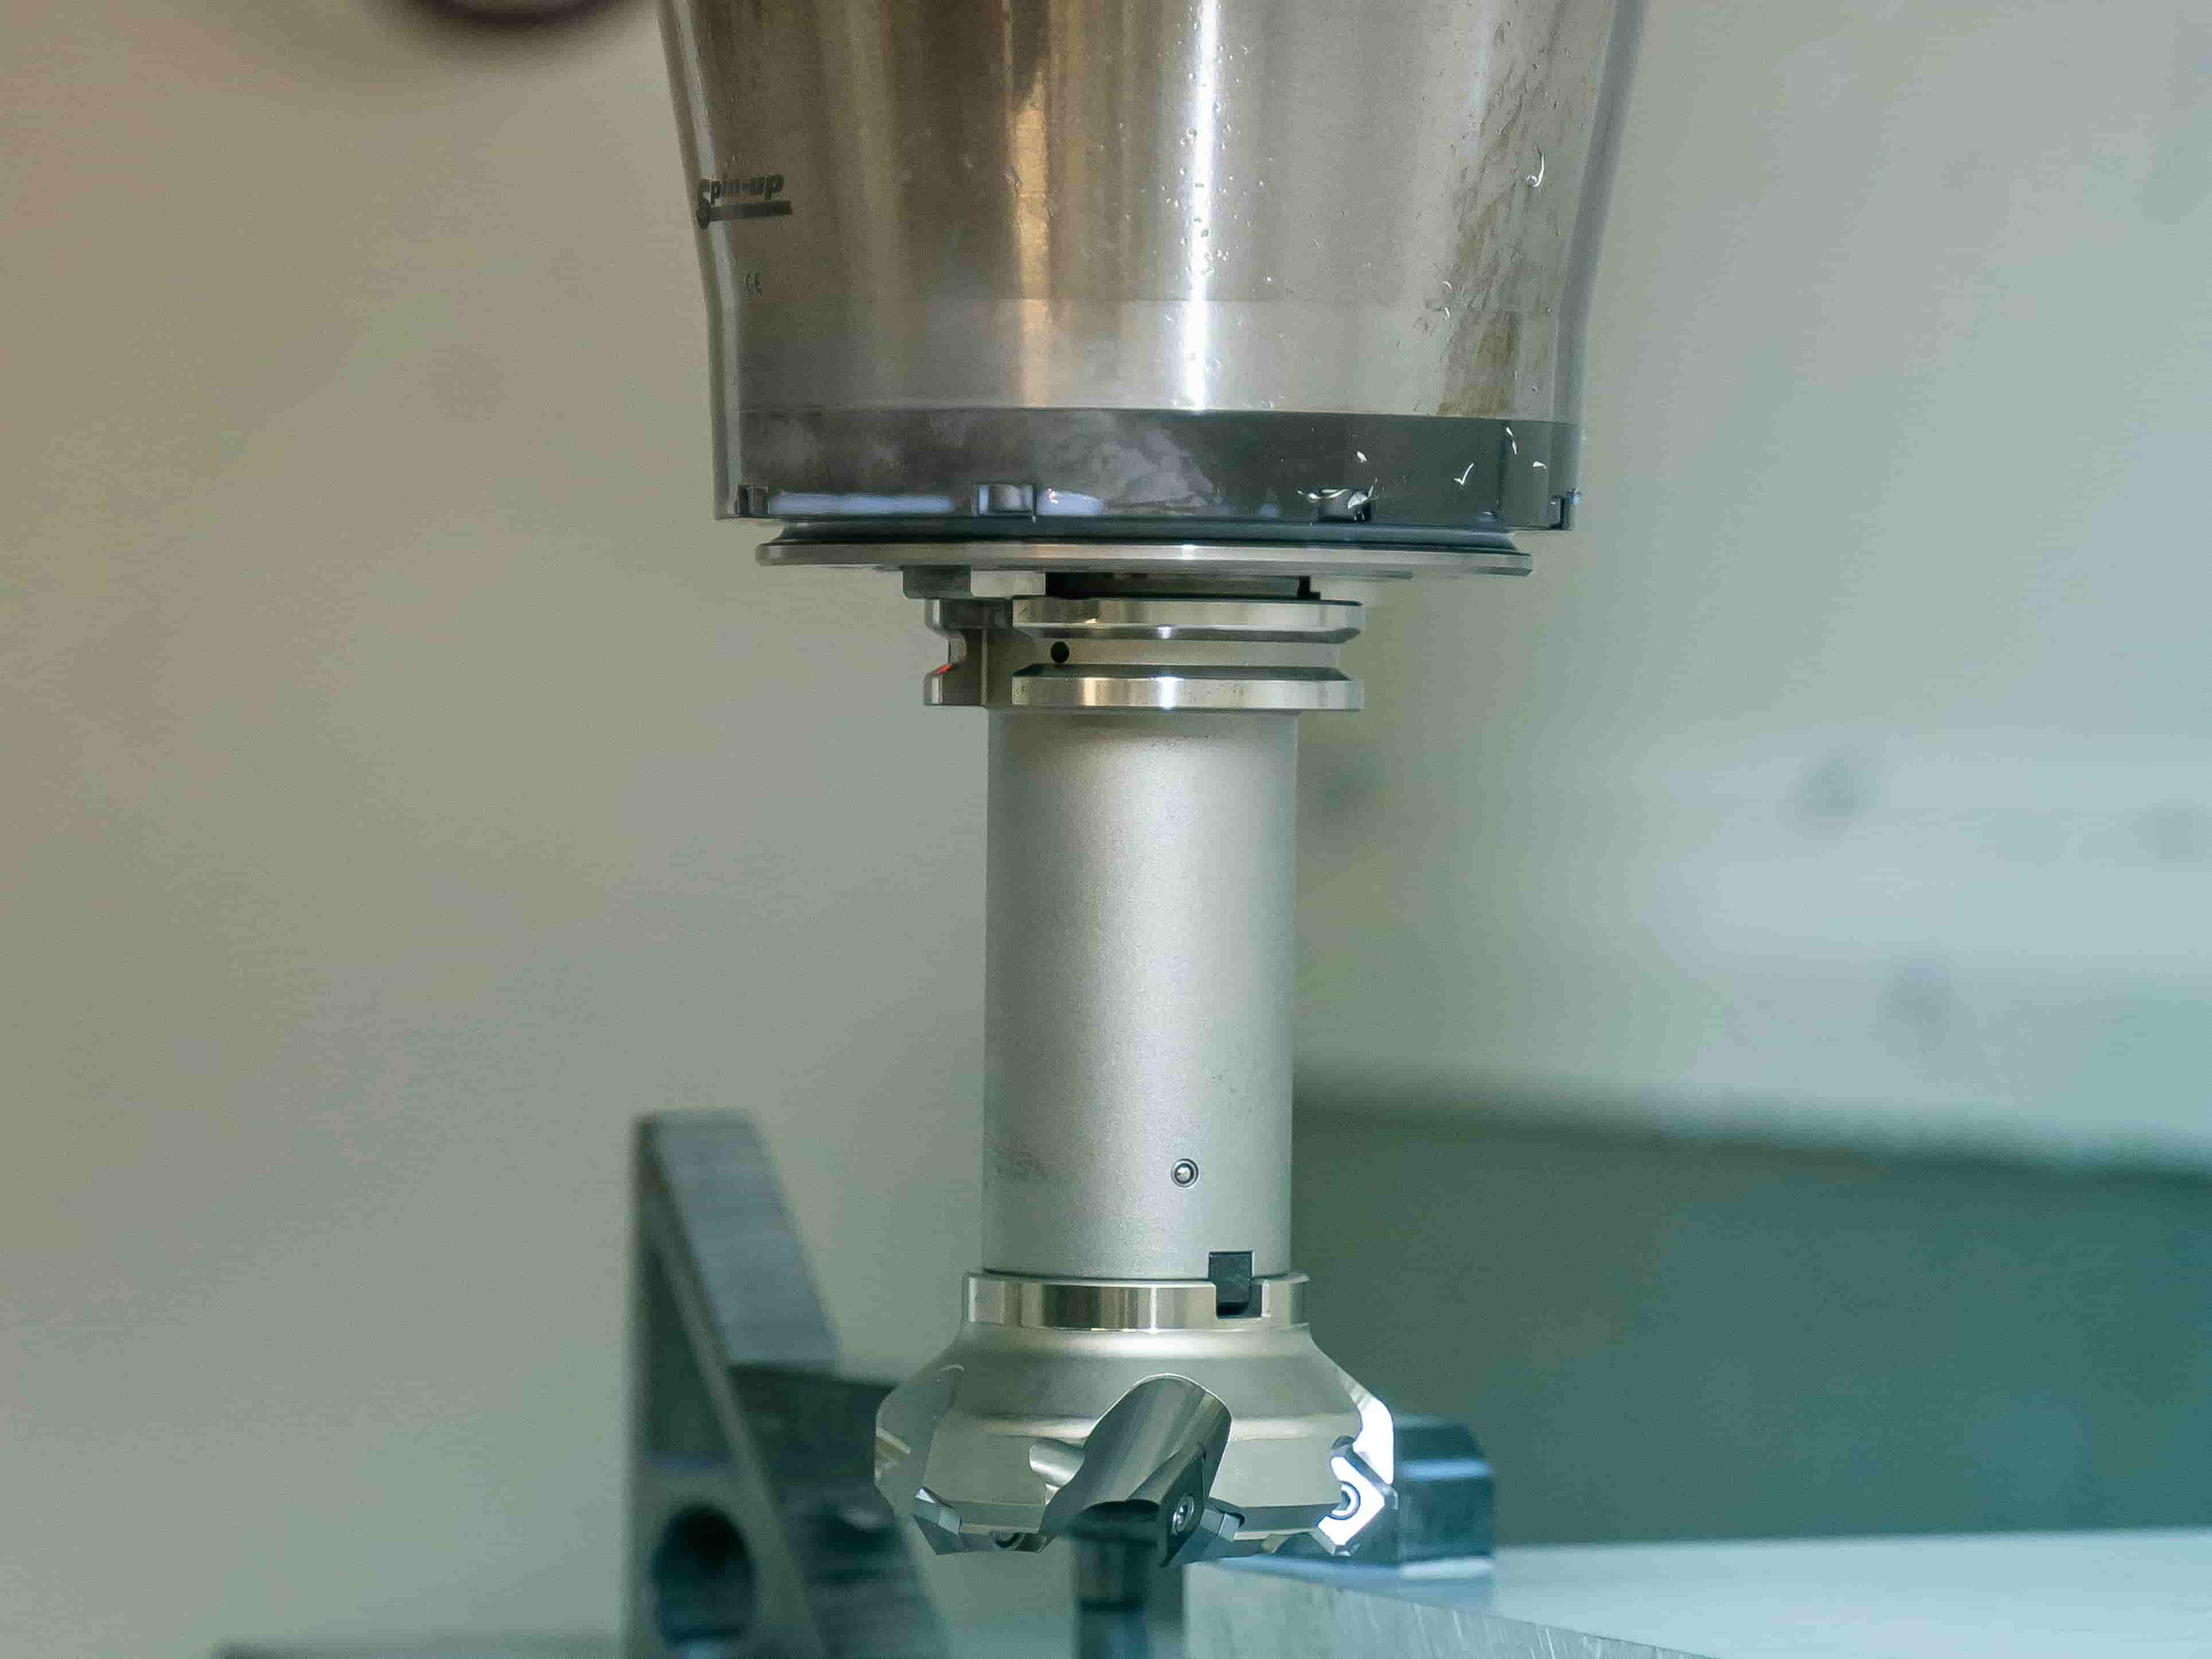 تفاوت بین ماشینکاری CNC و پرینت سه بعدی چیست؟